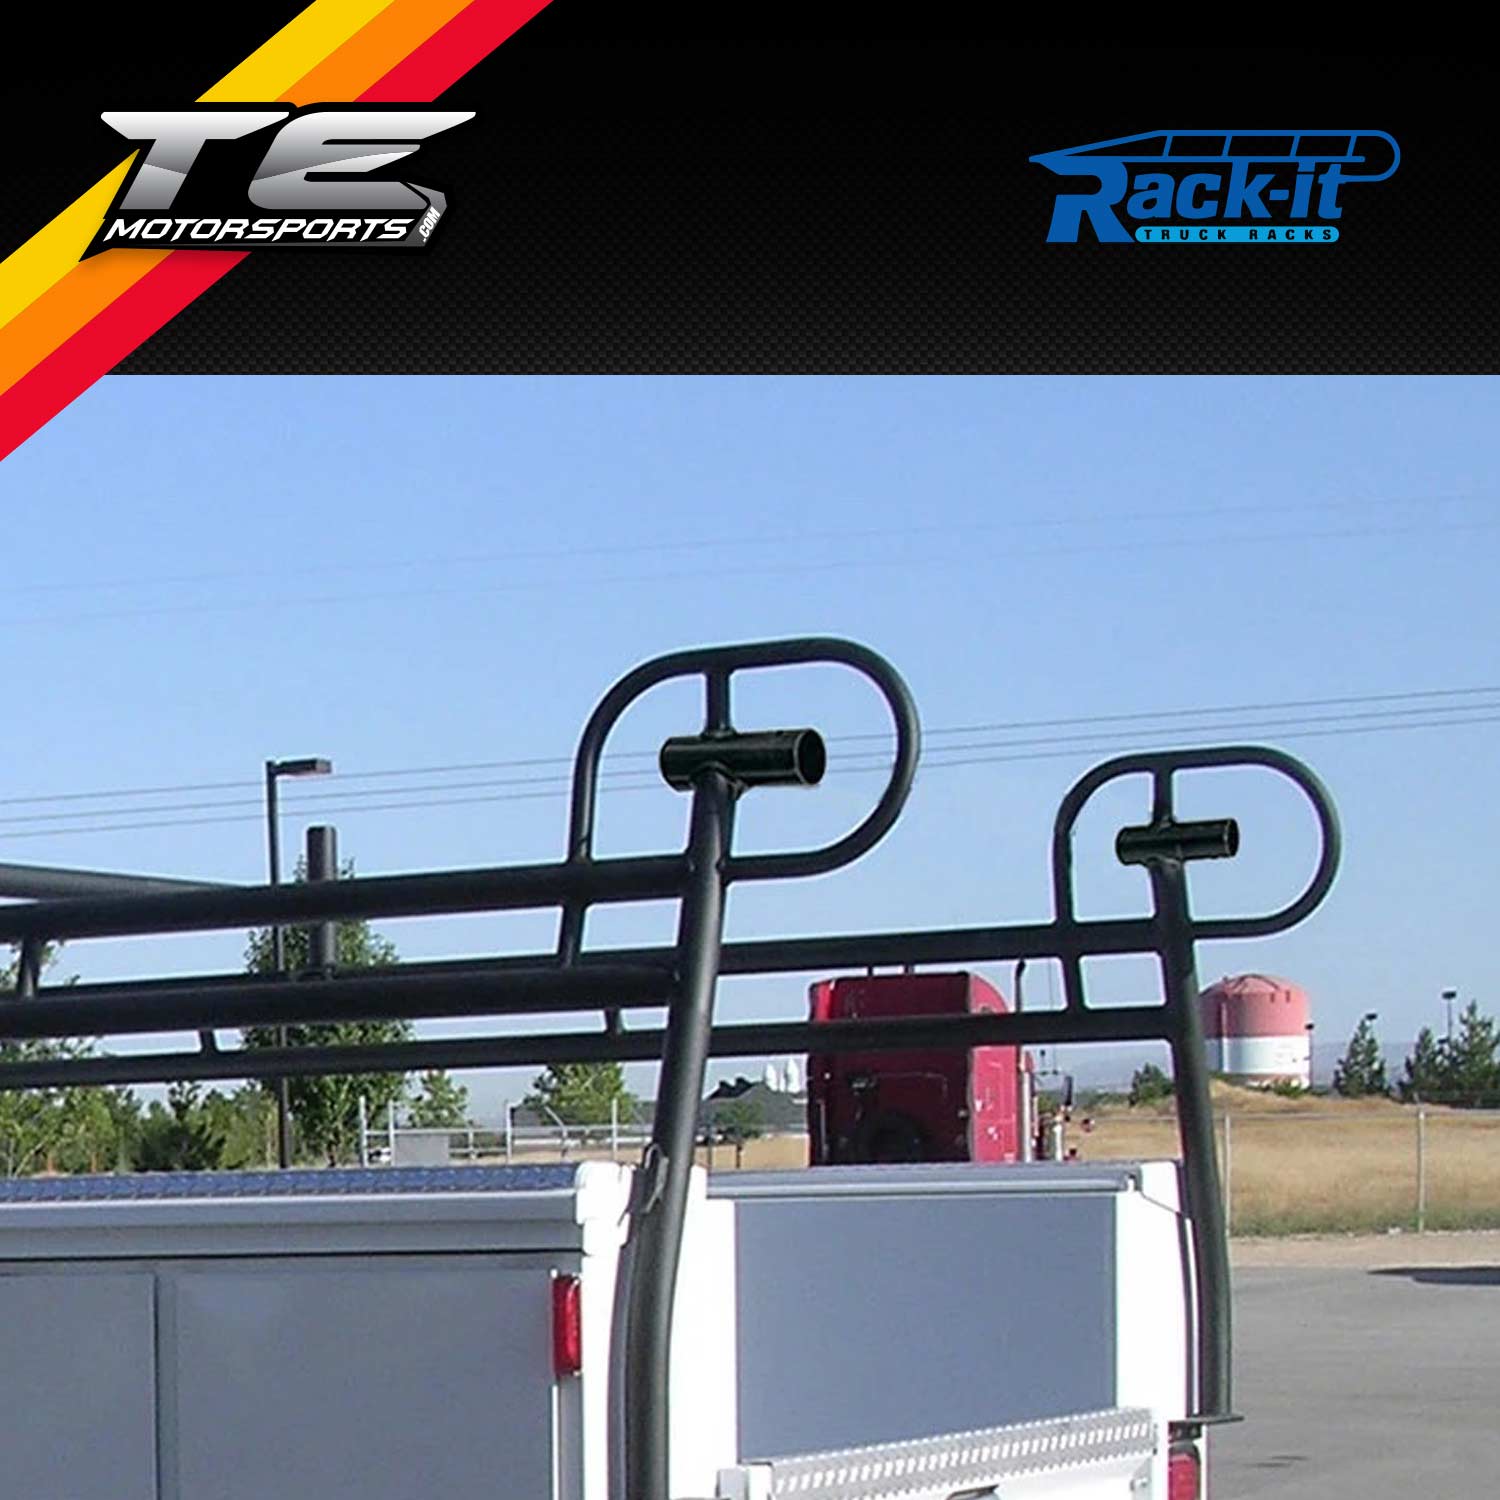 Rack-it Utility Service Body Steel Pipe Rack